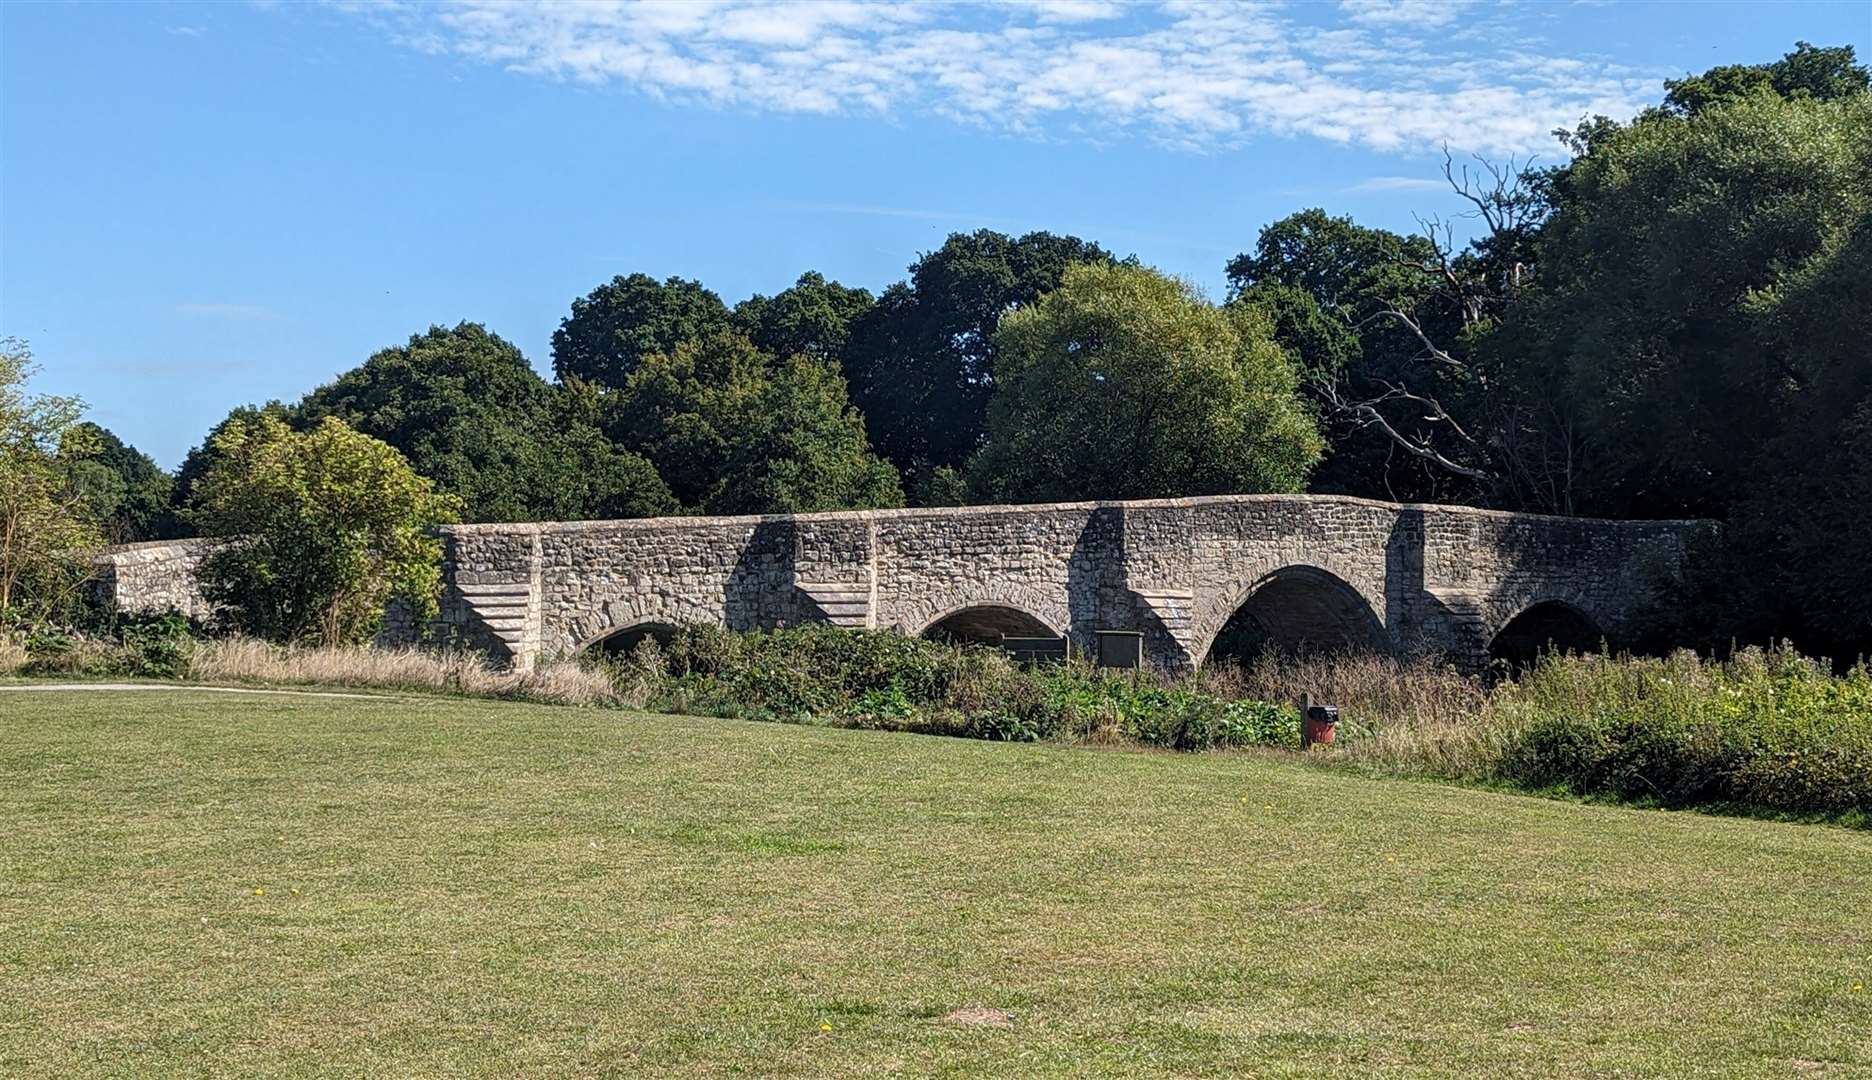 The stone bridge at Teston